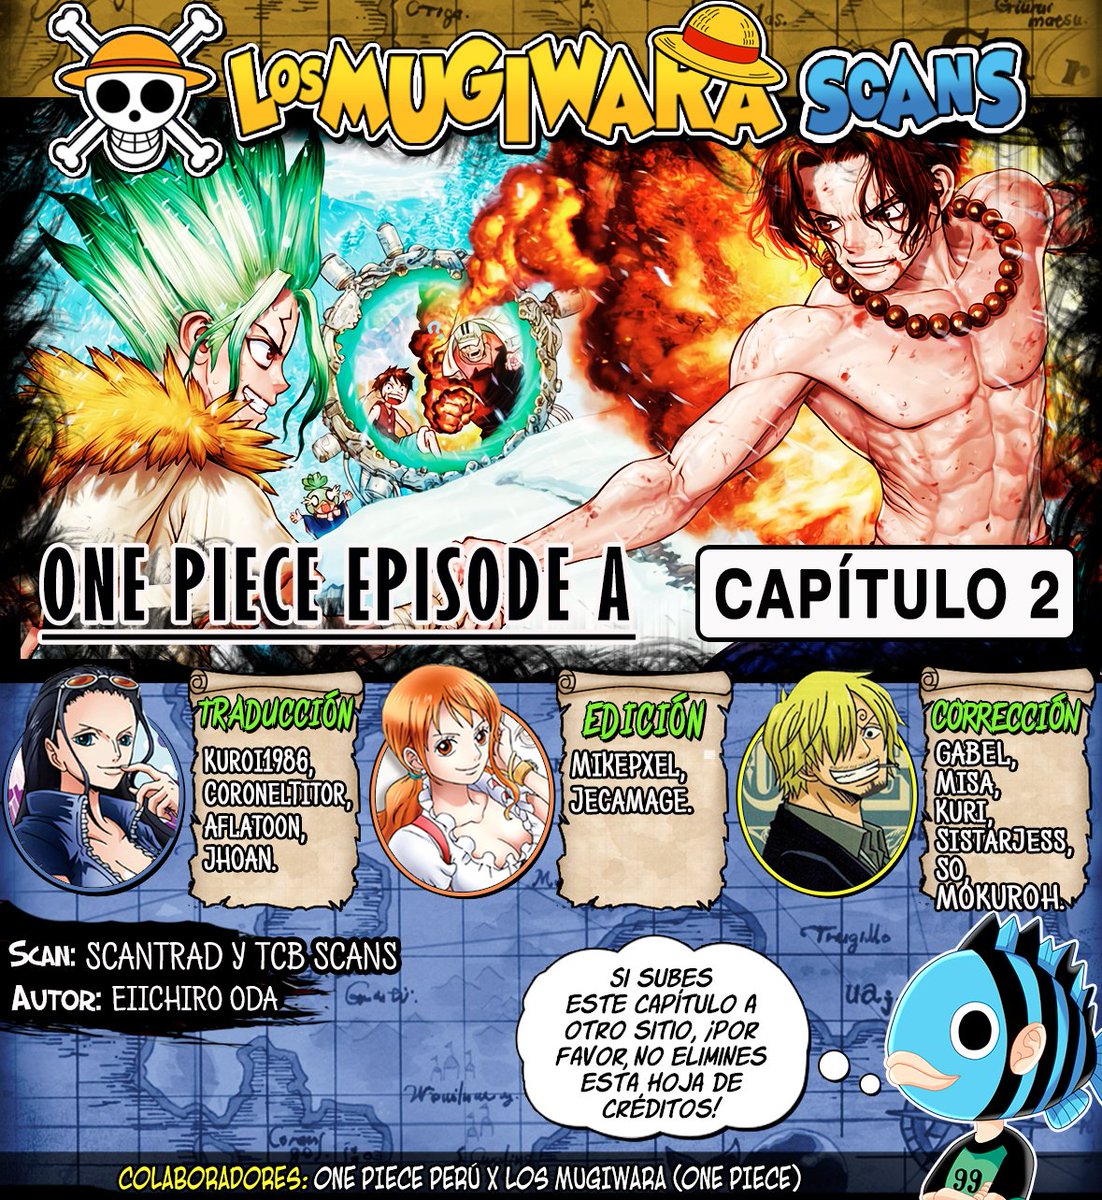 Los Mugiwara Scans Spin Off One Piece Episode Ace Cap 2 Nota Si Lo Van A Subir A Otros Sitios Pongan El Link De Nuestra Pagina En Los Creditos Y No